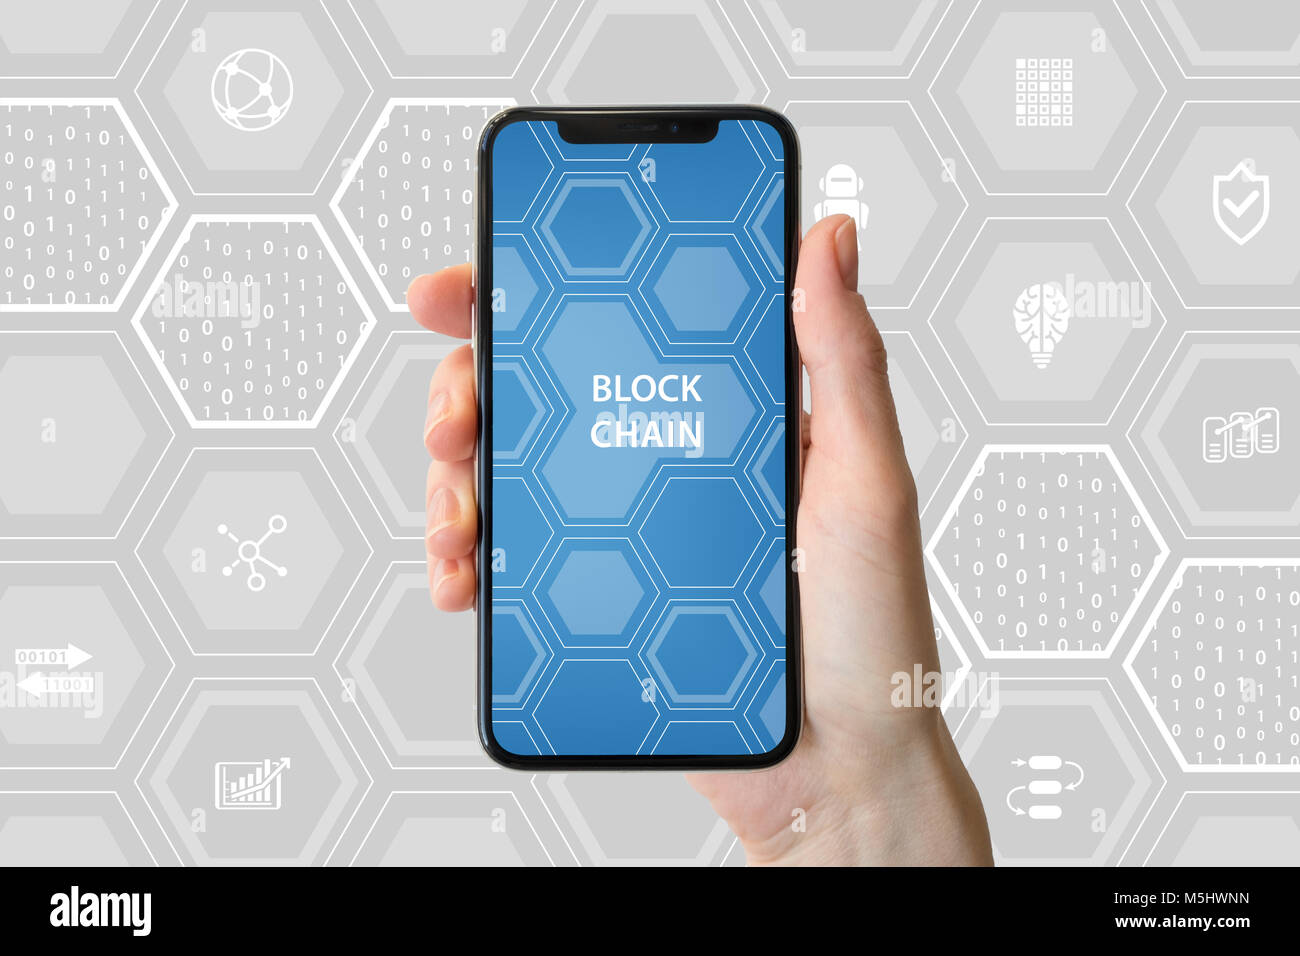 Blockchain cryptocurrency et concept. Main tenant cadre moderne-smartphone libre en face de fond neutre. Banque D'Images